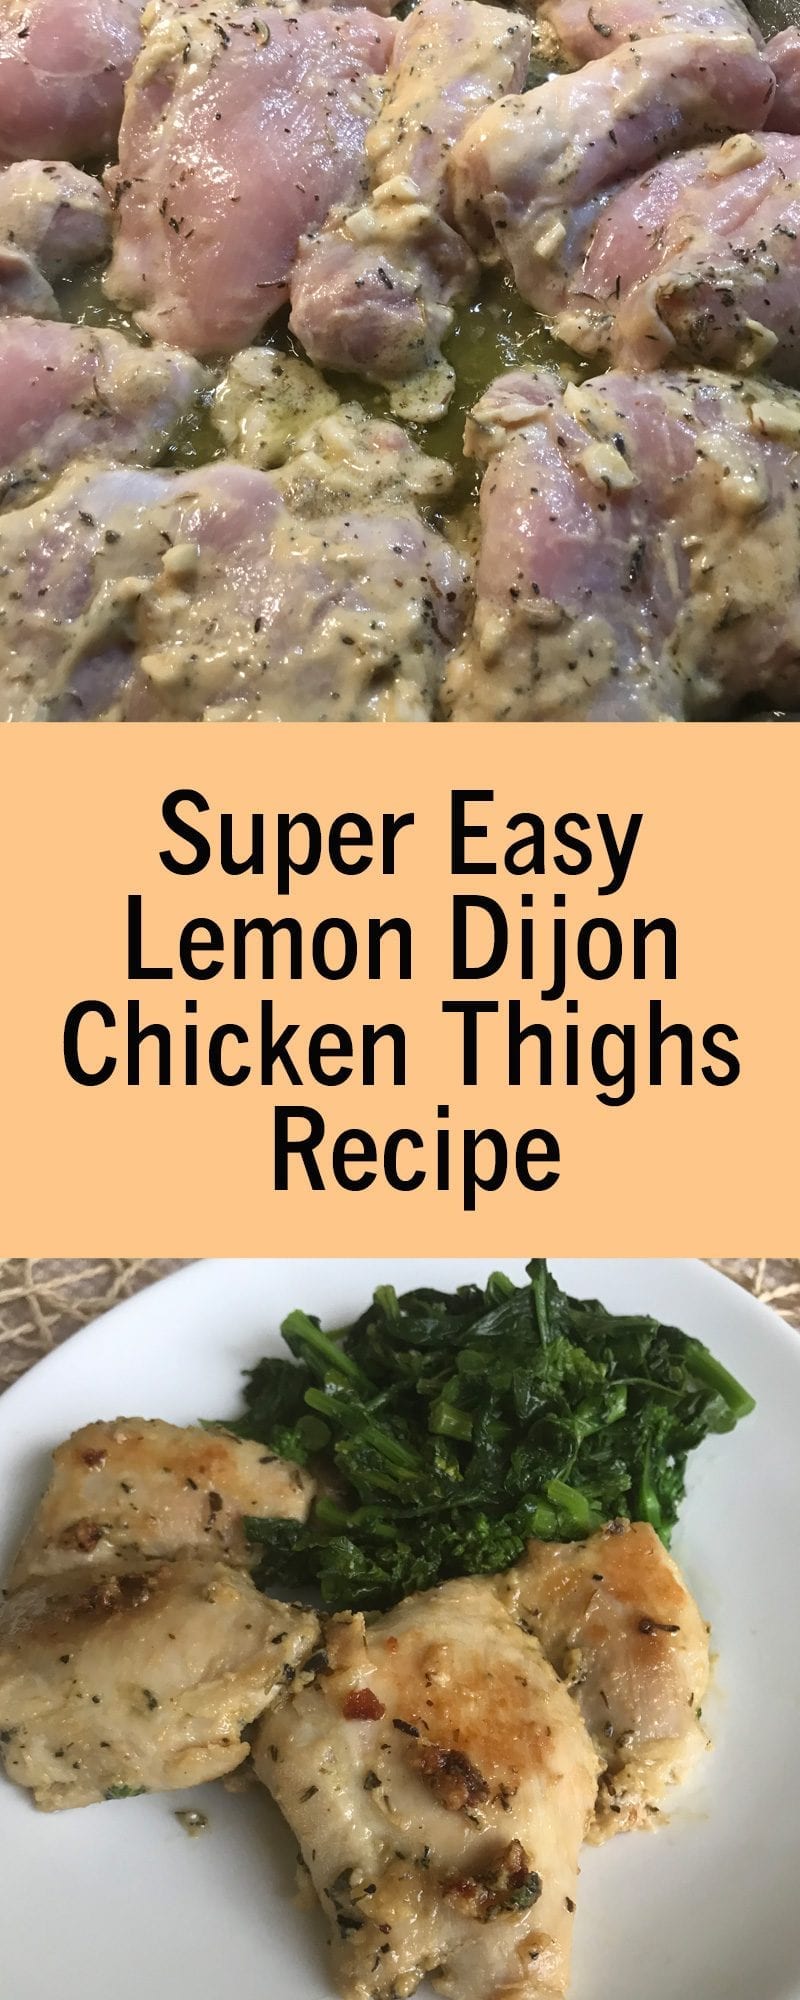 Super Easy Lemon Dijon Chicken Thighs Recipe